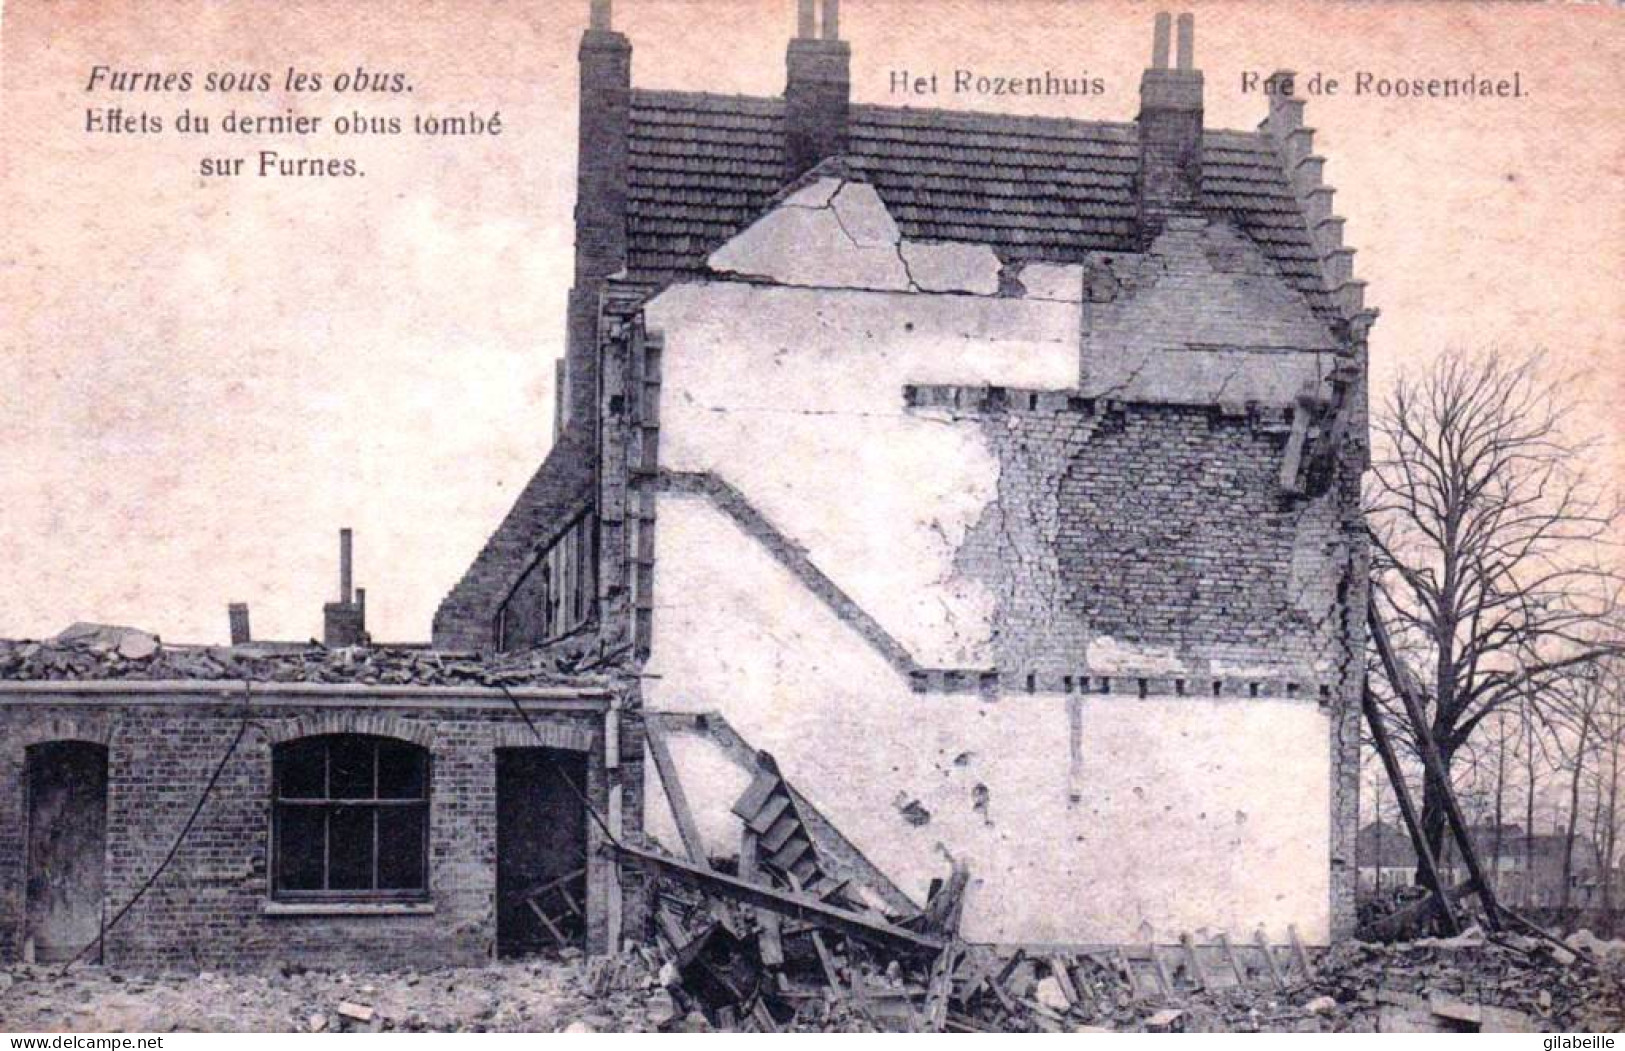 FURNES - VEURNE Sous Les Obus - Rue De Roosendael - Het Rozenhuis - Guerre 1914 /1918 - Veurne